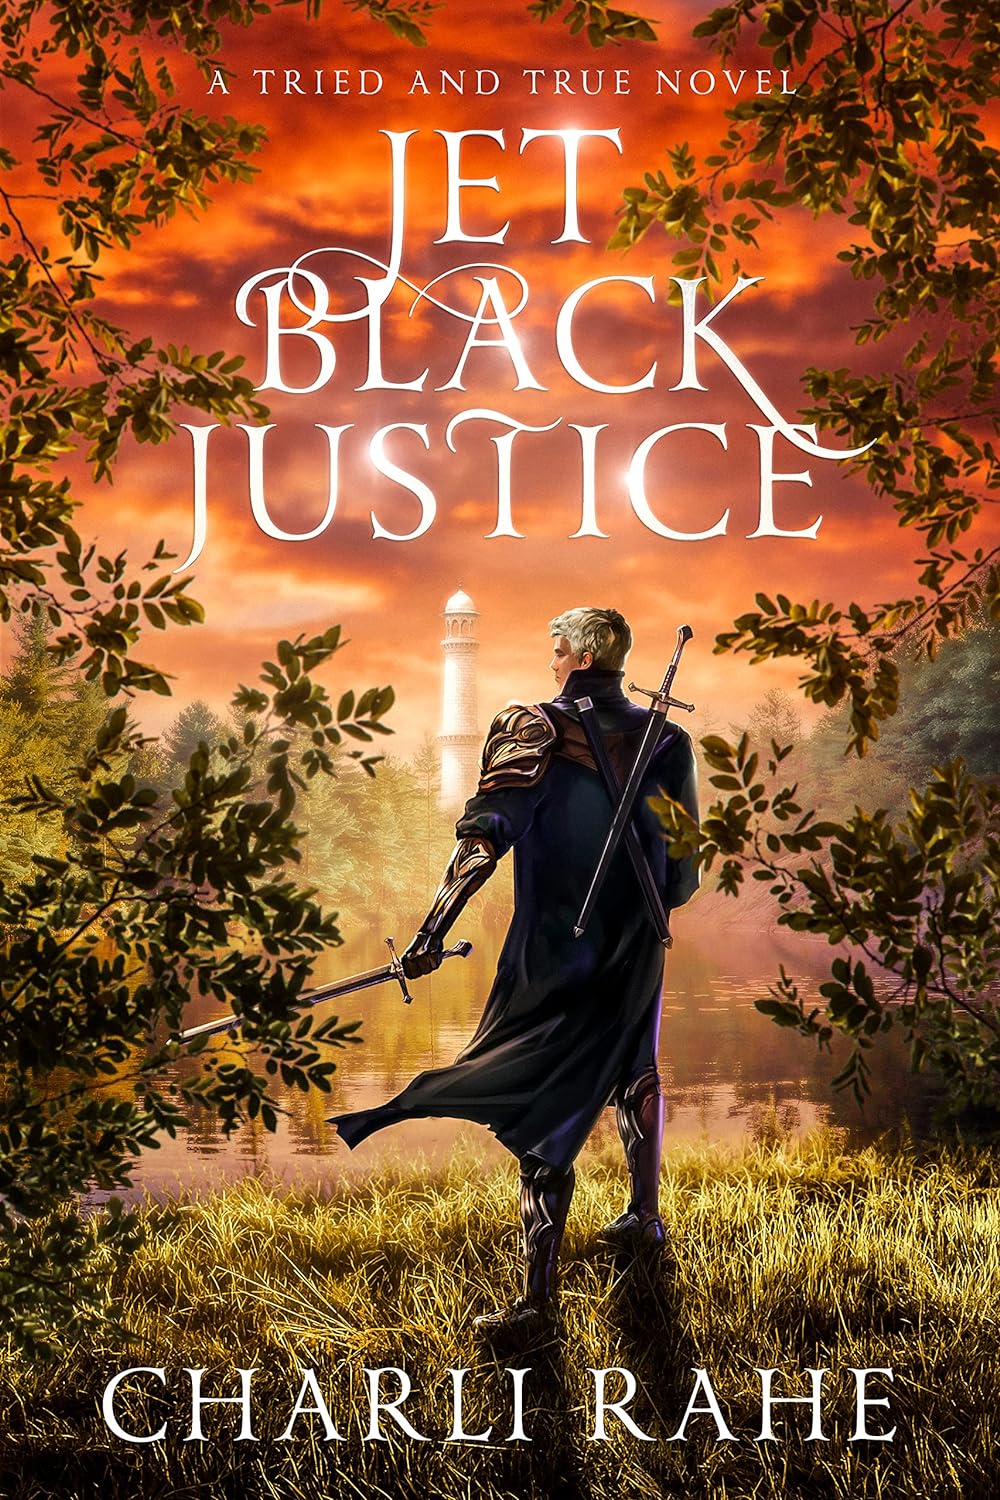 Jet Black Justice